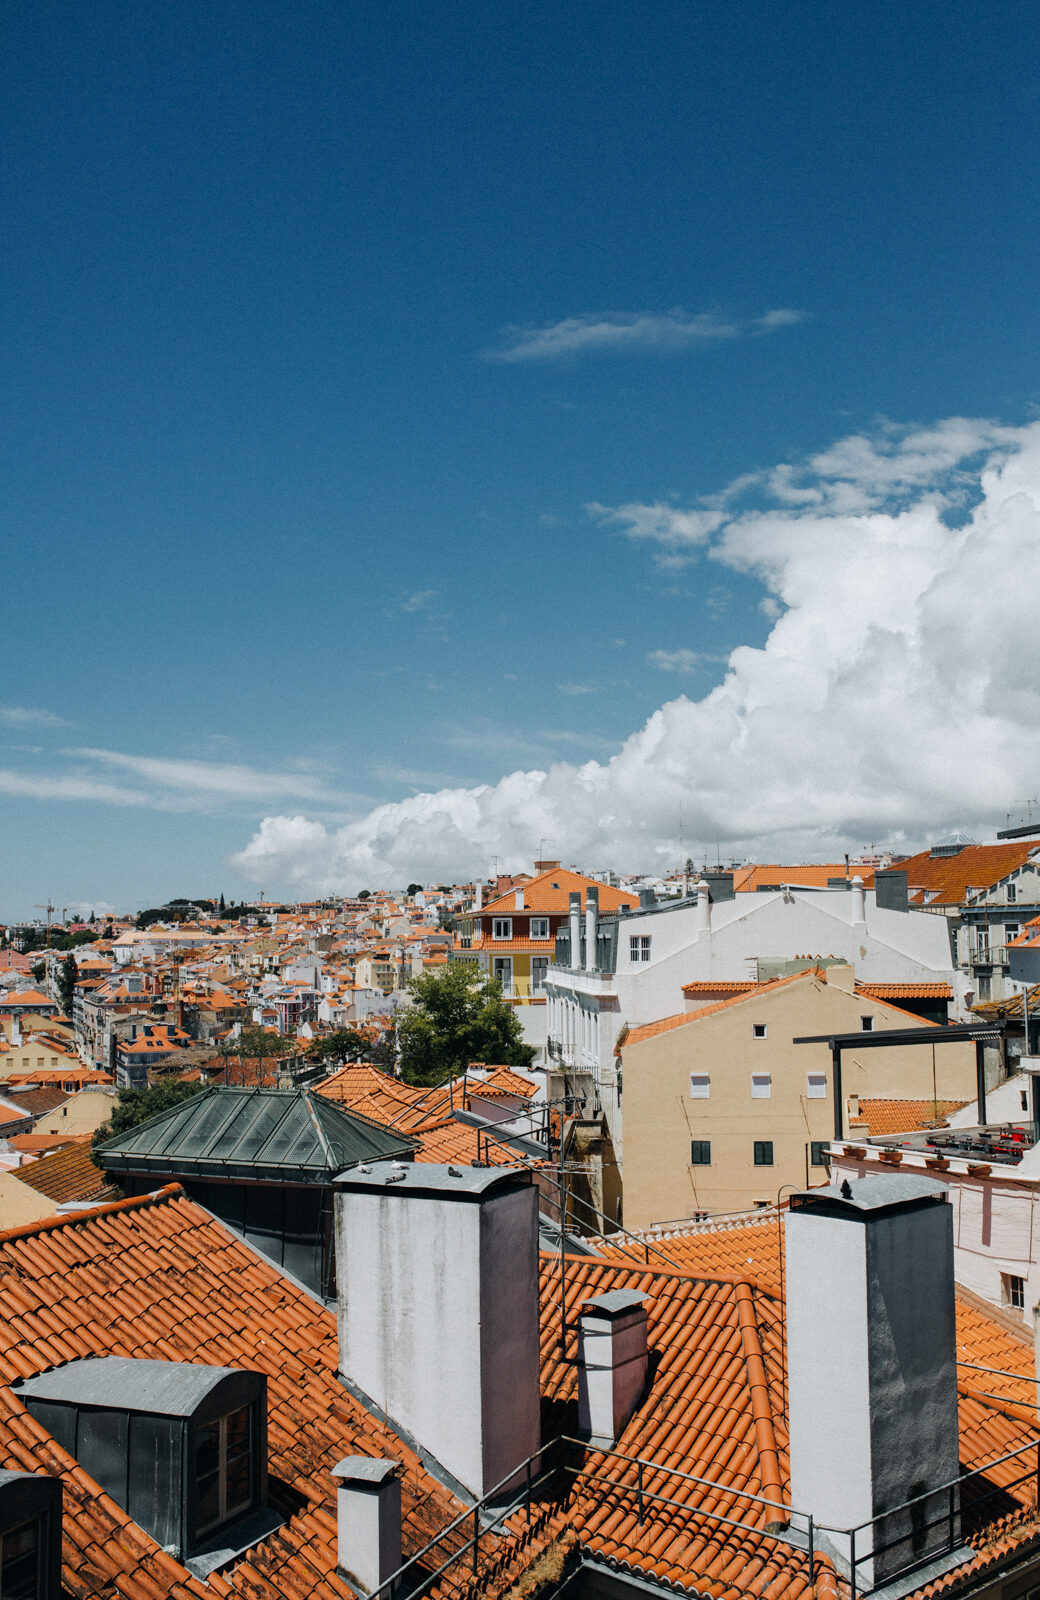 Aussichtspunkte sind tolle Fotospots in Lissabon für Touristen aber auch Einheimische